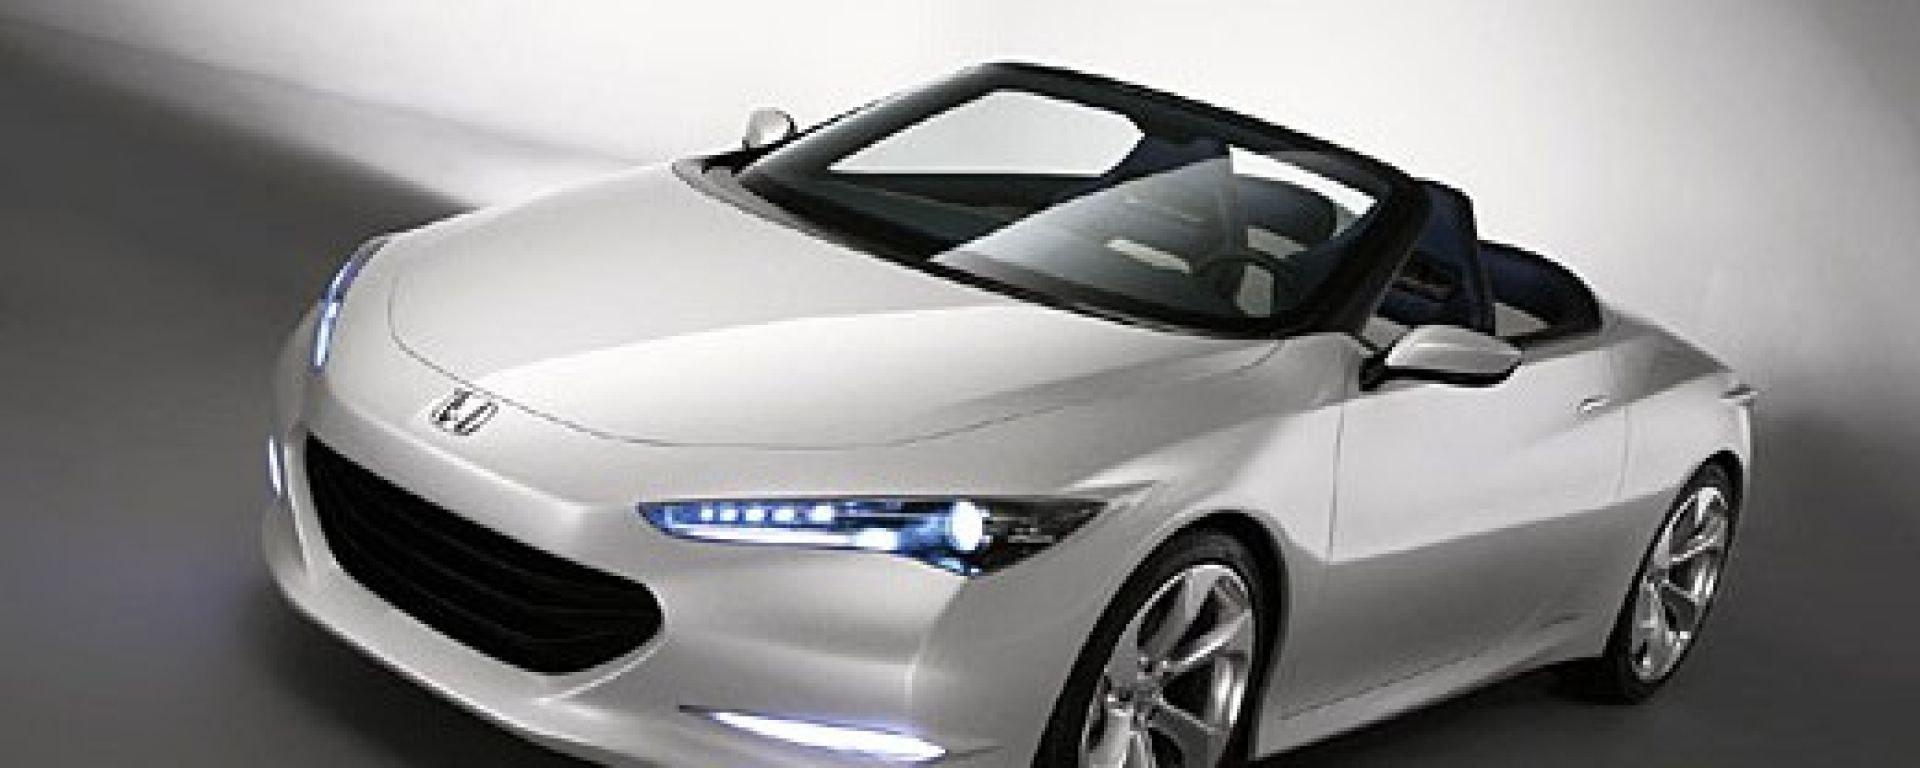 Concept car Honda OSM Cabrio Concept MotorBox